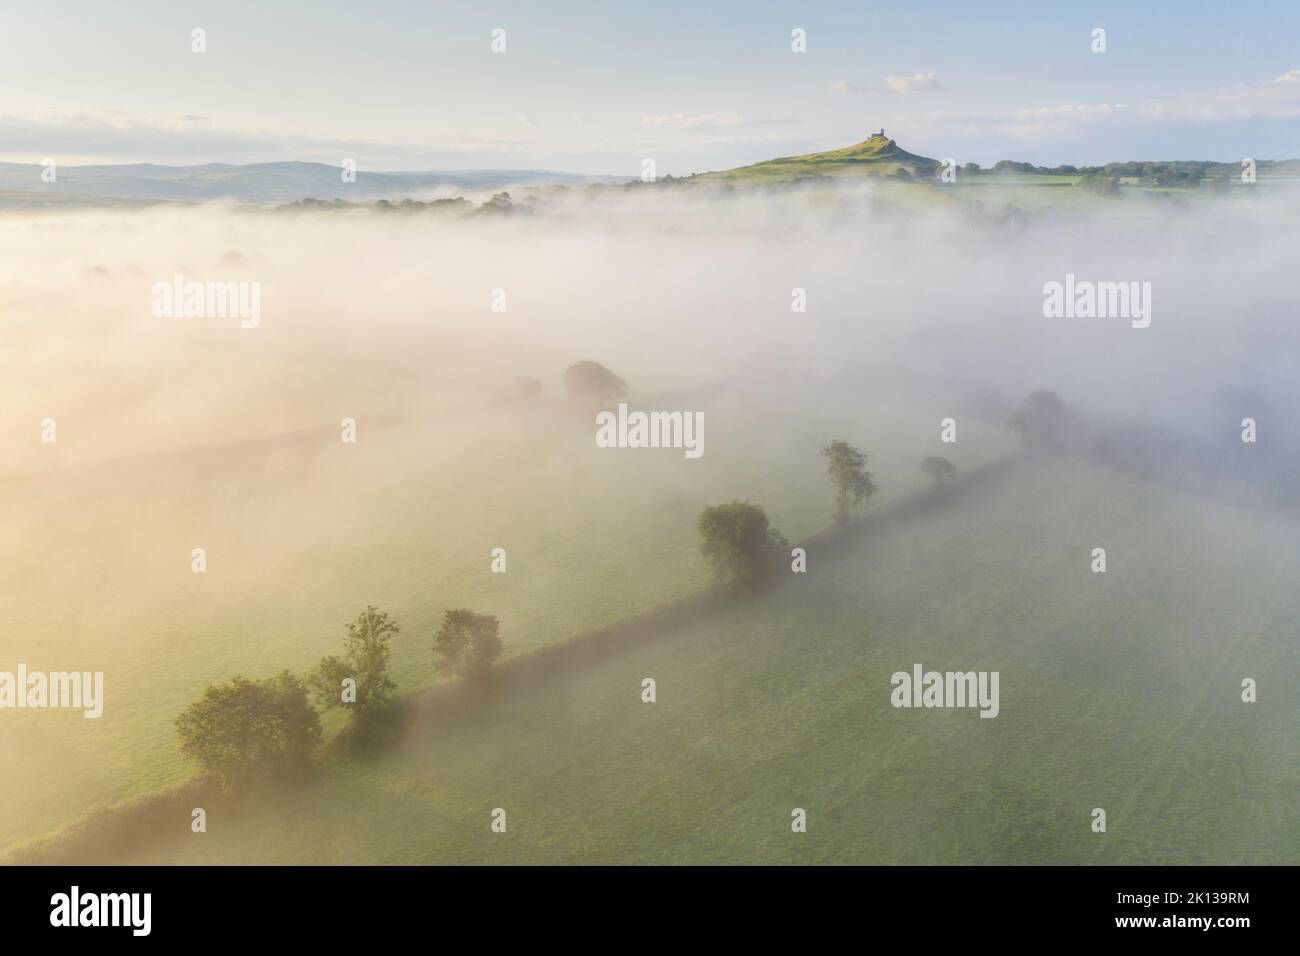 Vue aérienne sur la campagne enveloppée de brume en direction de l'église Brentor, parc national de Dartmoor, Devon, Angleterre, Royaume-Uni, Europe Banque D'Images